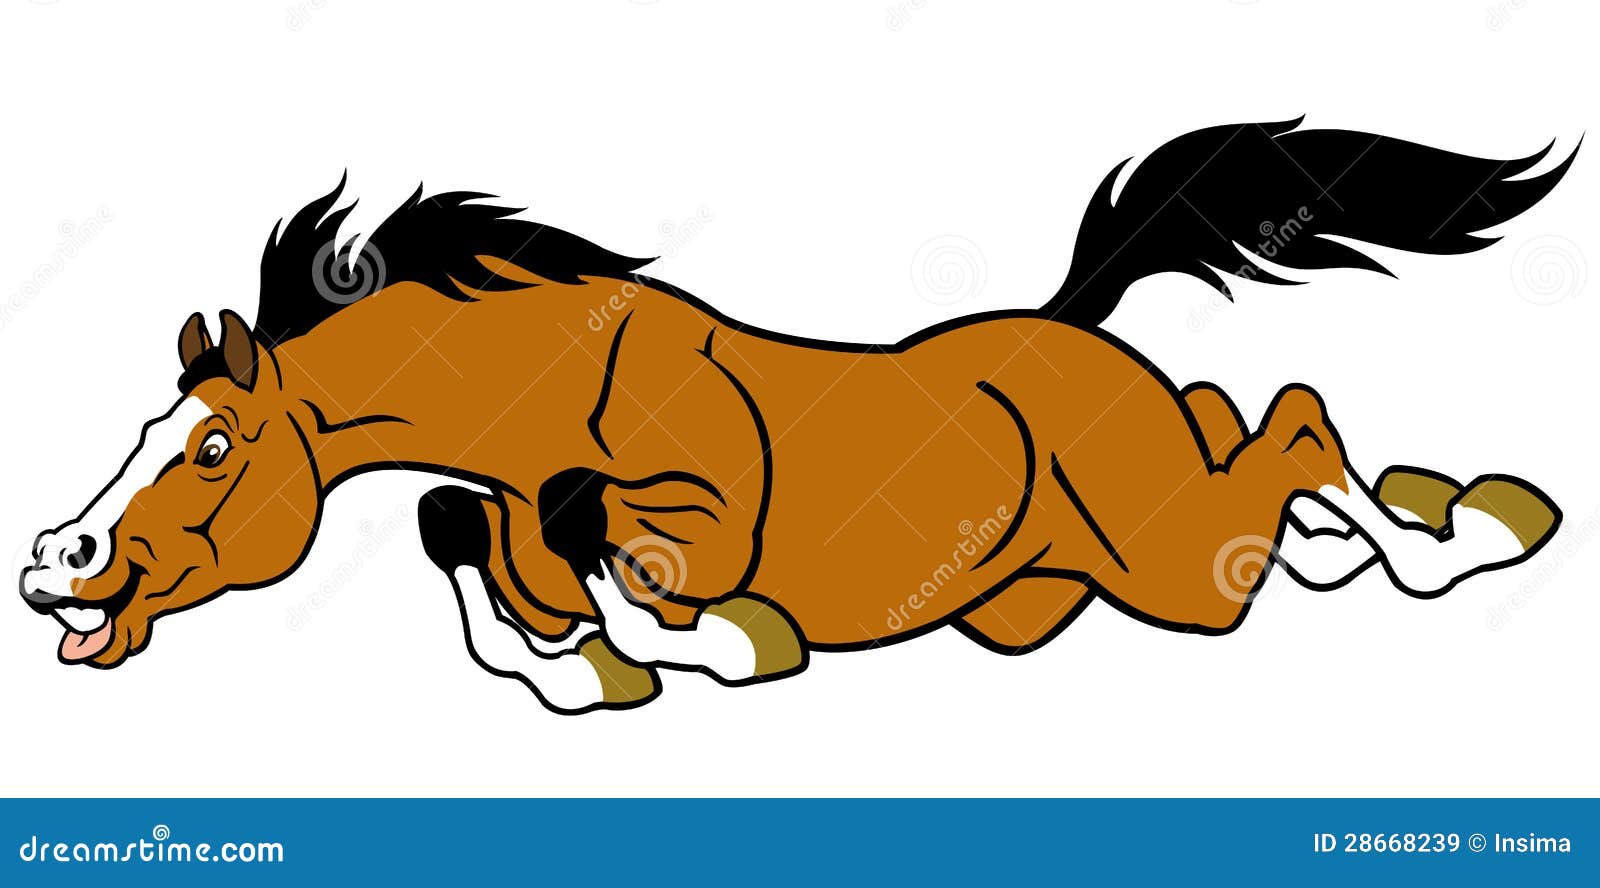 Running Horse Cartoon Stock Illustrations – 3,342 Running Horse Cartoon  Stock Illustrations, Vectors & Clipart - Dreamstime